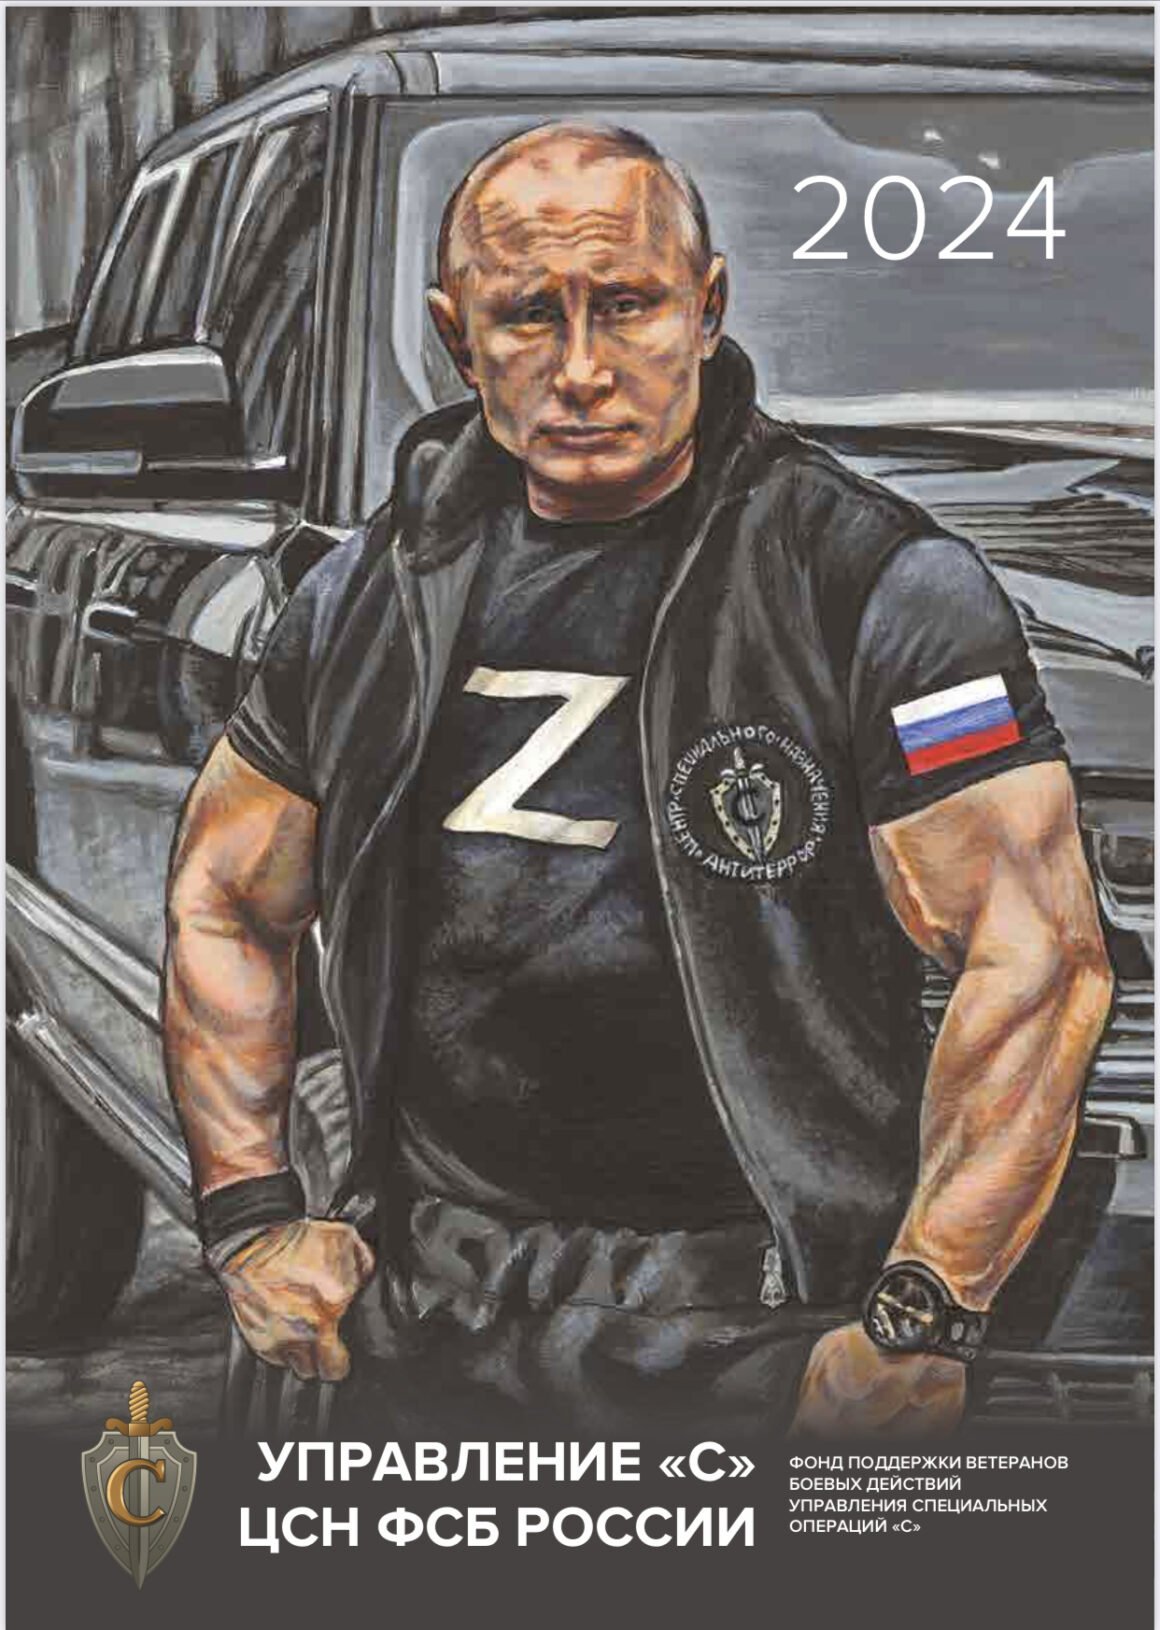 Журнал Freedom Strength Beauty и Фондс "С" выпустили календарь с Путиным